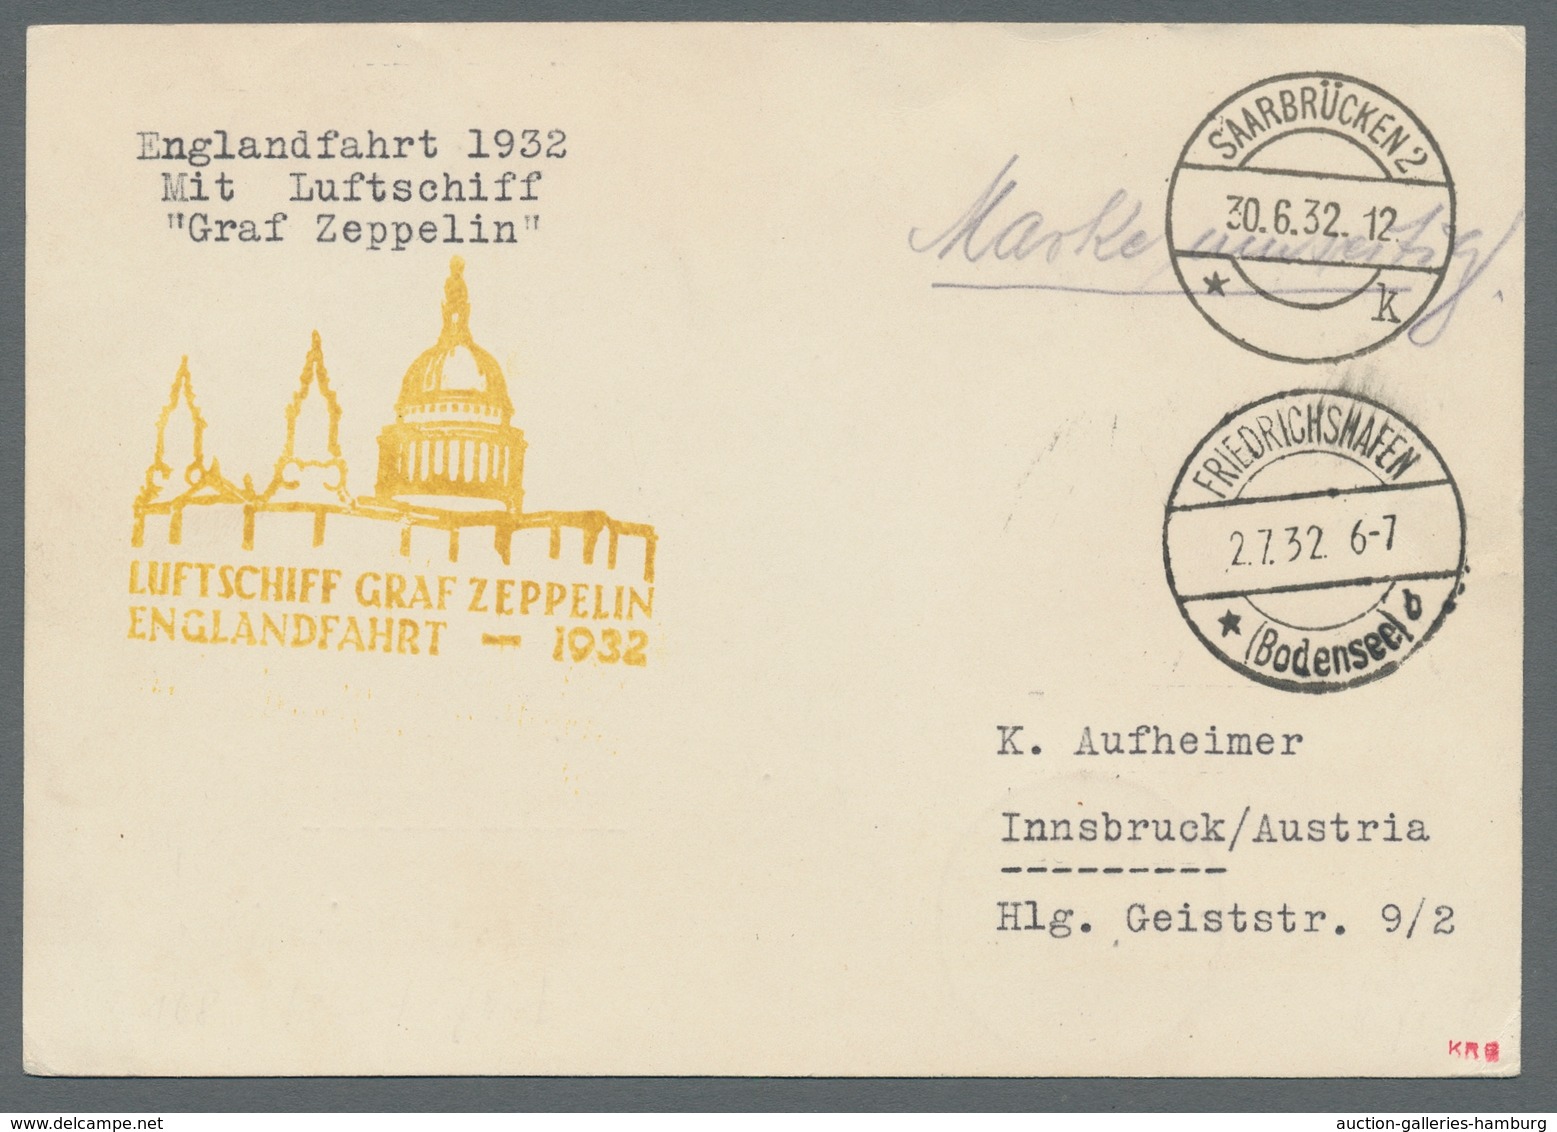 Zeppelinpost Deutschland: 1932 - Englandfahrt, Zuleitung Saar Auf Hochwertig Und Portorichtig Mit Mi - Luft- Und Zeppelinpost